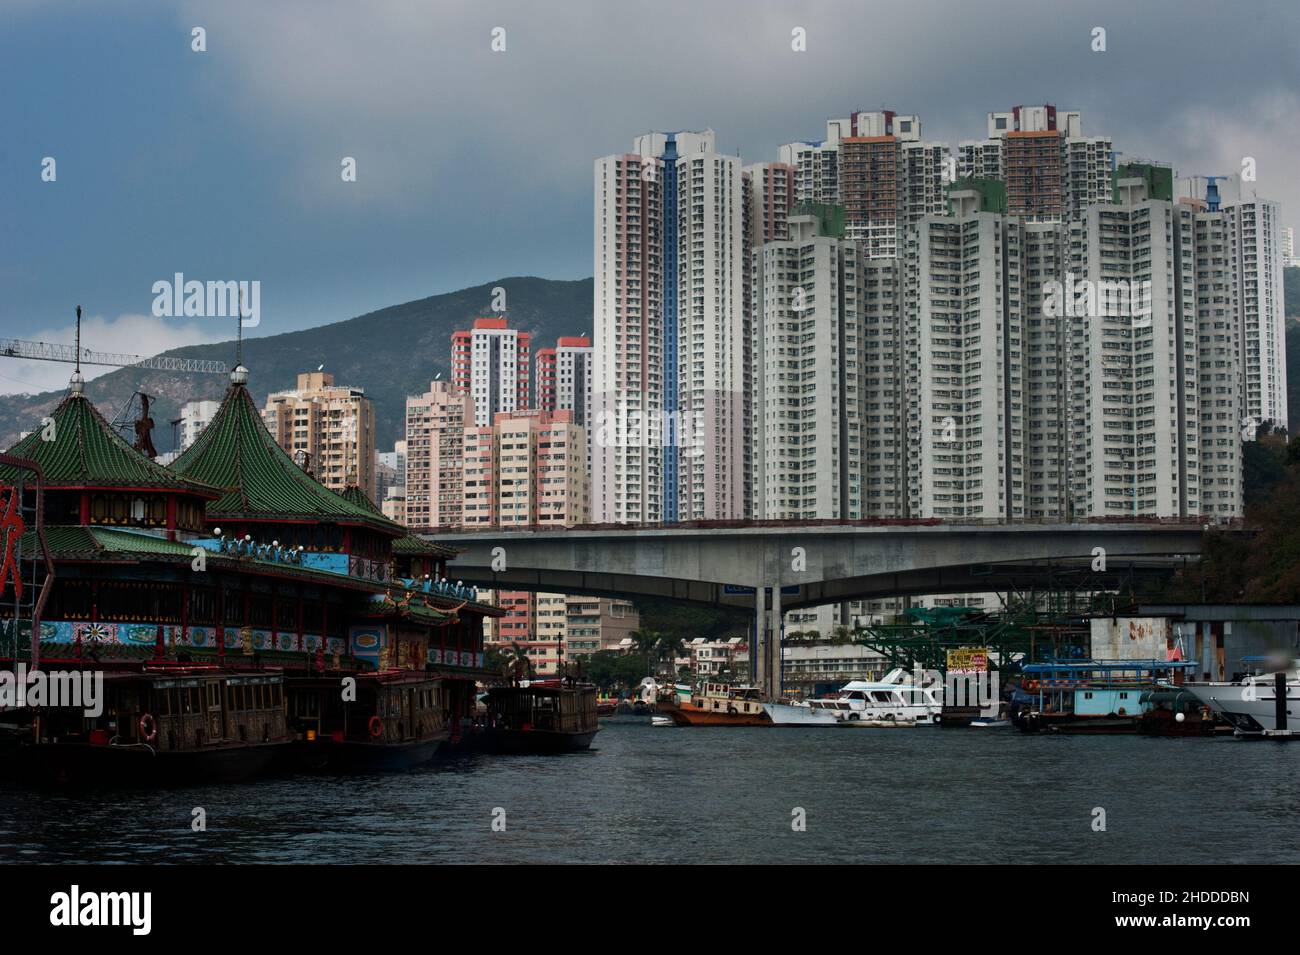 Jumbo Kingdom, ein schwimmendes Restaurant, mit der Kulisse des Aberdeen Floating Village und den Turmblöcken dahinter, Hongkong. Stockfoto